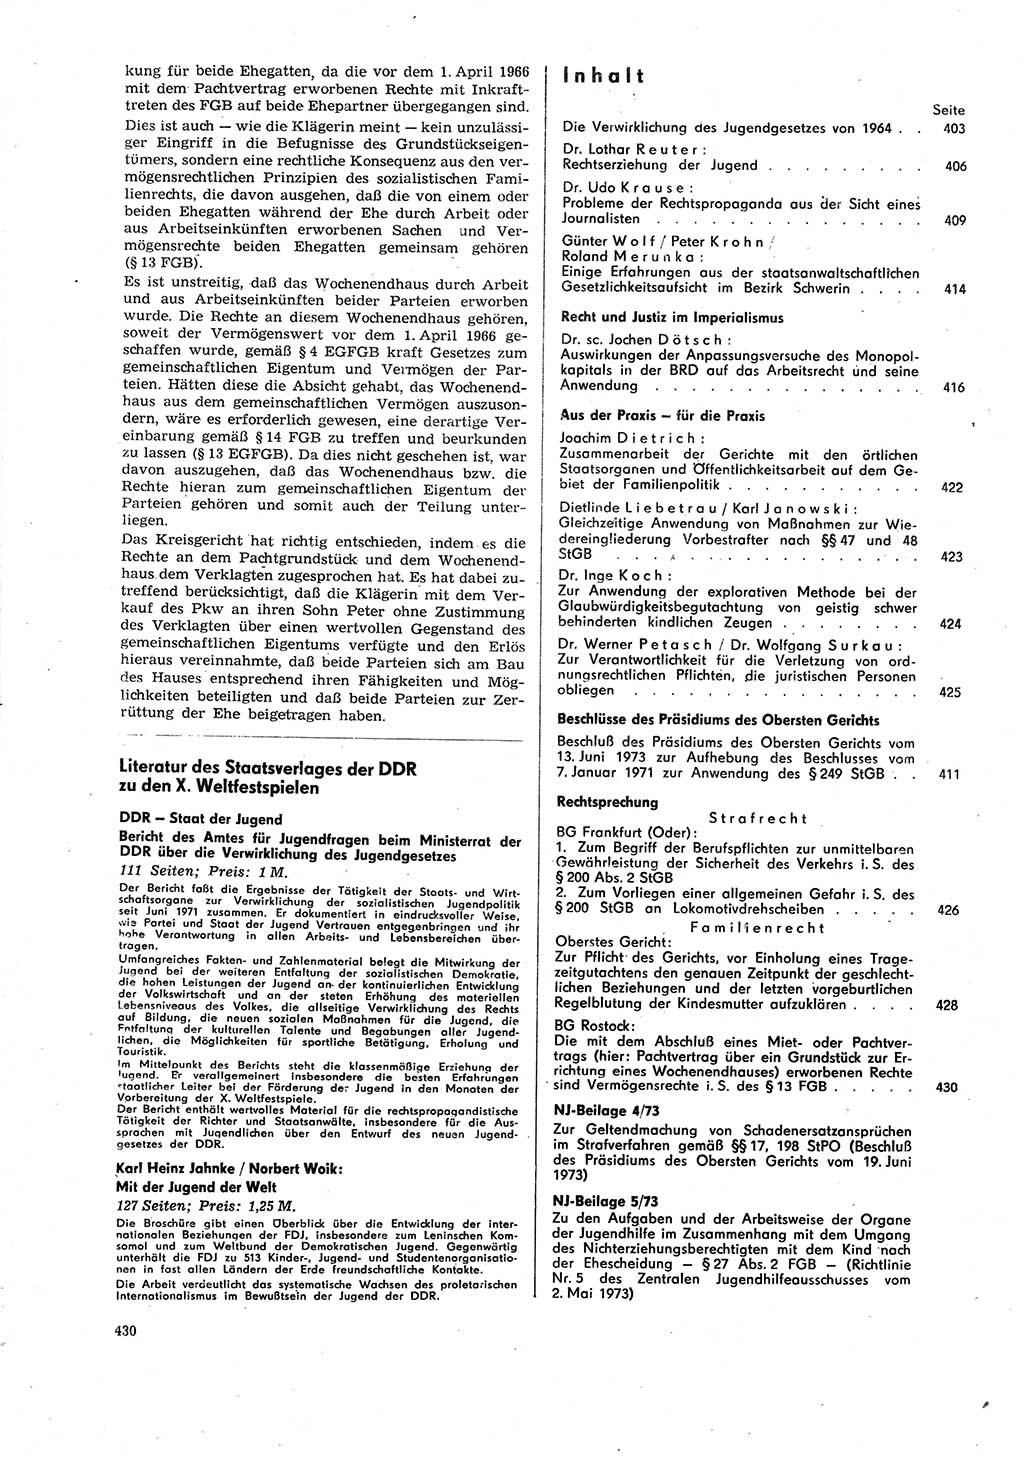 Neue Justiz (NJ), Zeitschrift für Recht und Rechtswissenschaft [Deutsche Demokratische Republik (DDR)], 27. Jahrgang 1973, Seite 430 (NJ DDR 1973, S. 430)